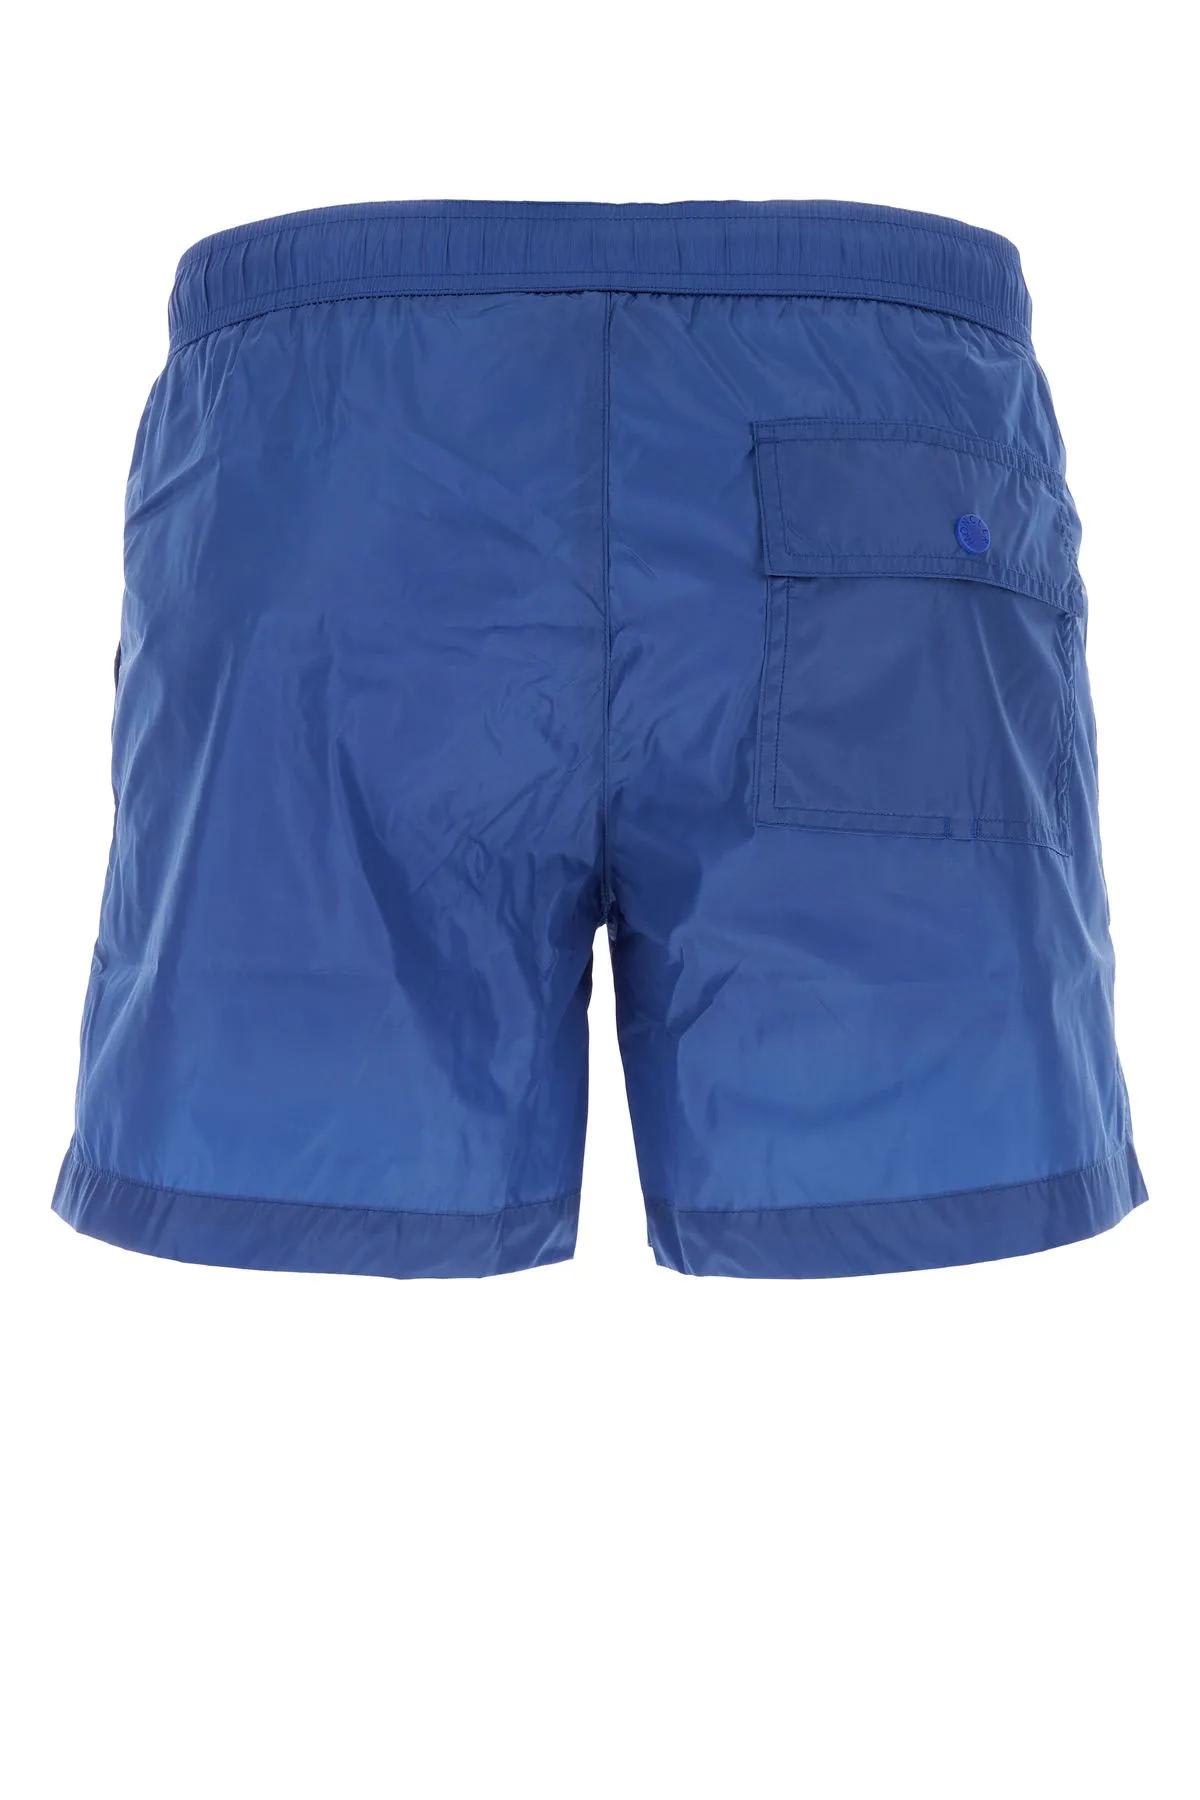 Shop Moncler Blue Nylon Swimming Shorts